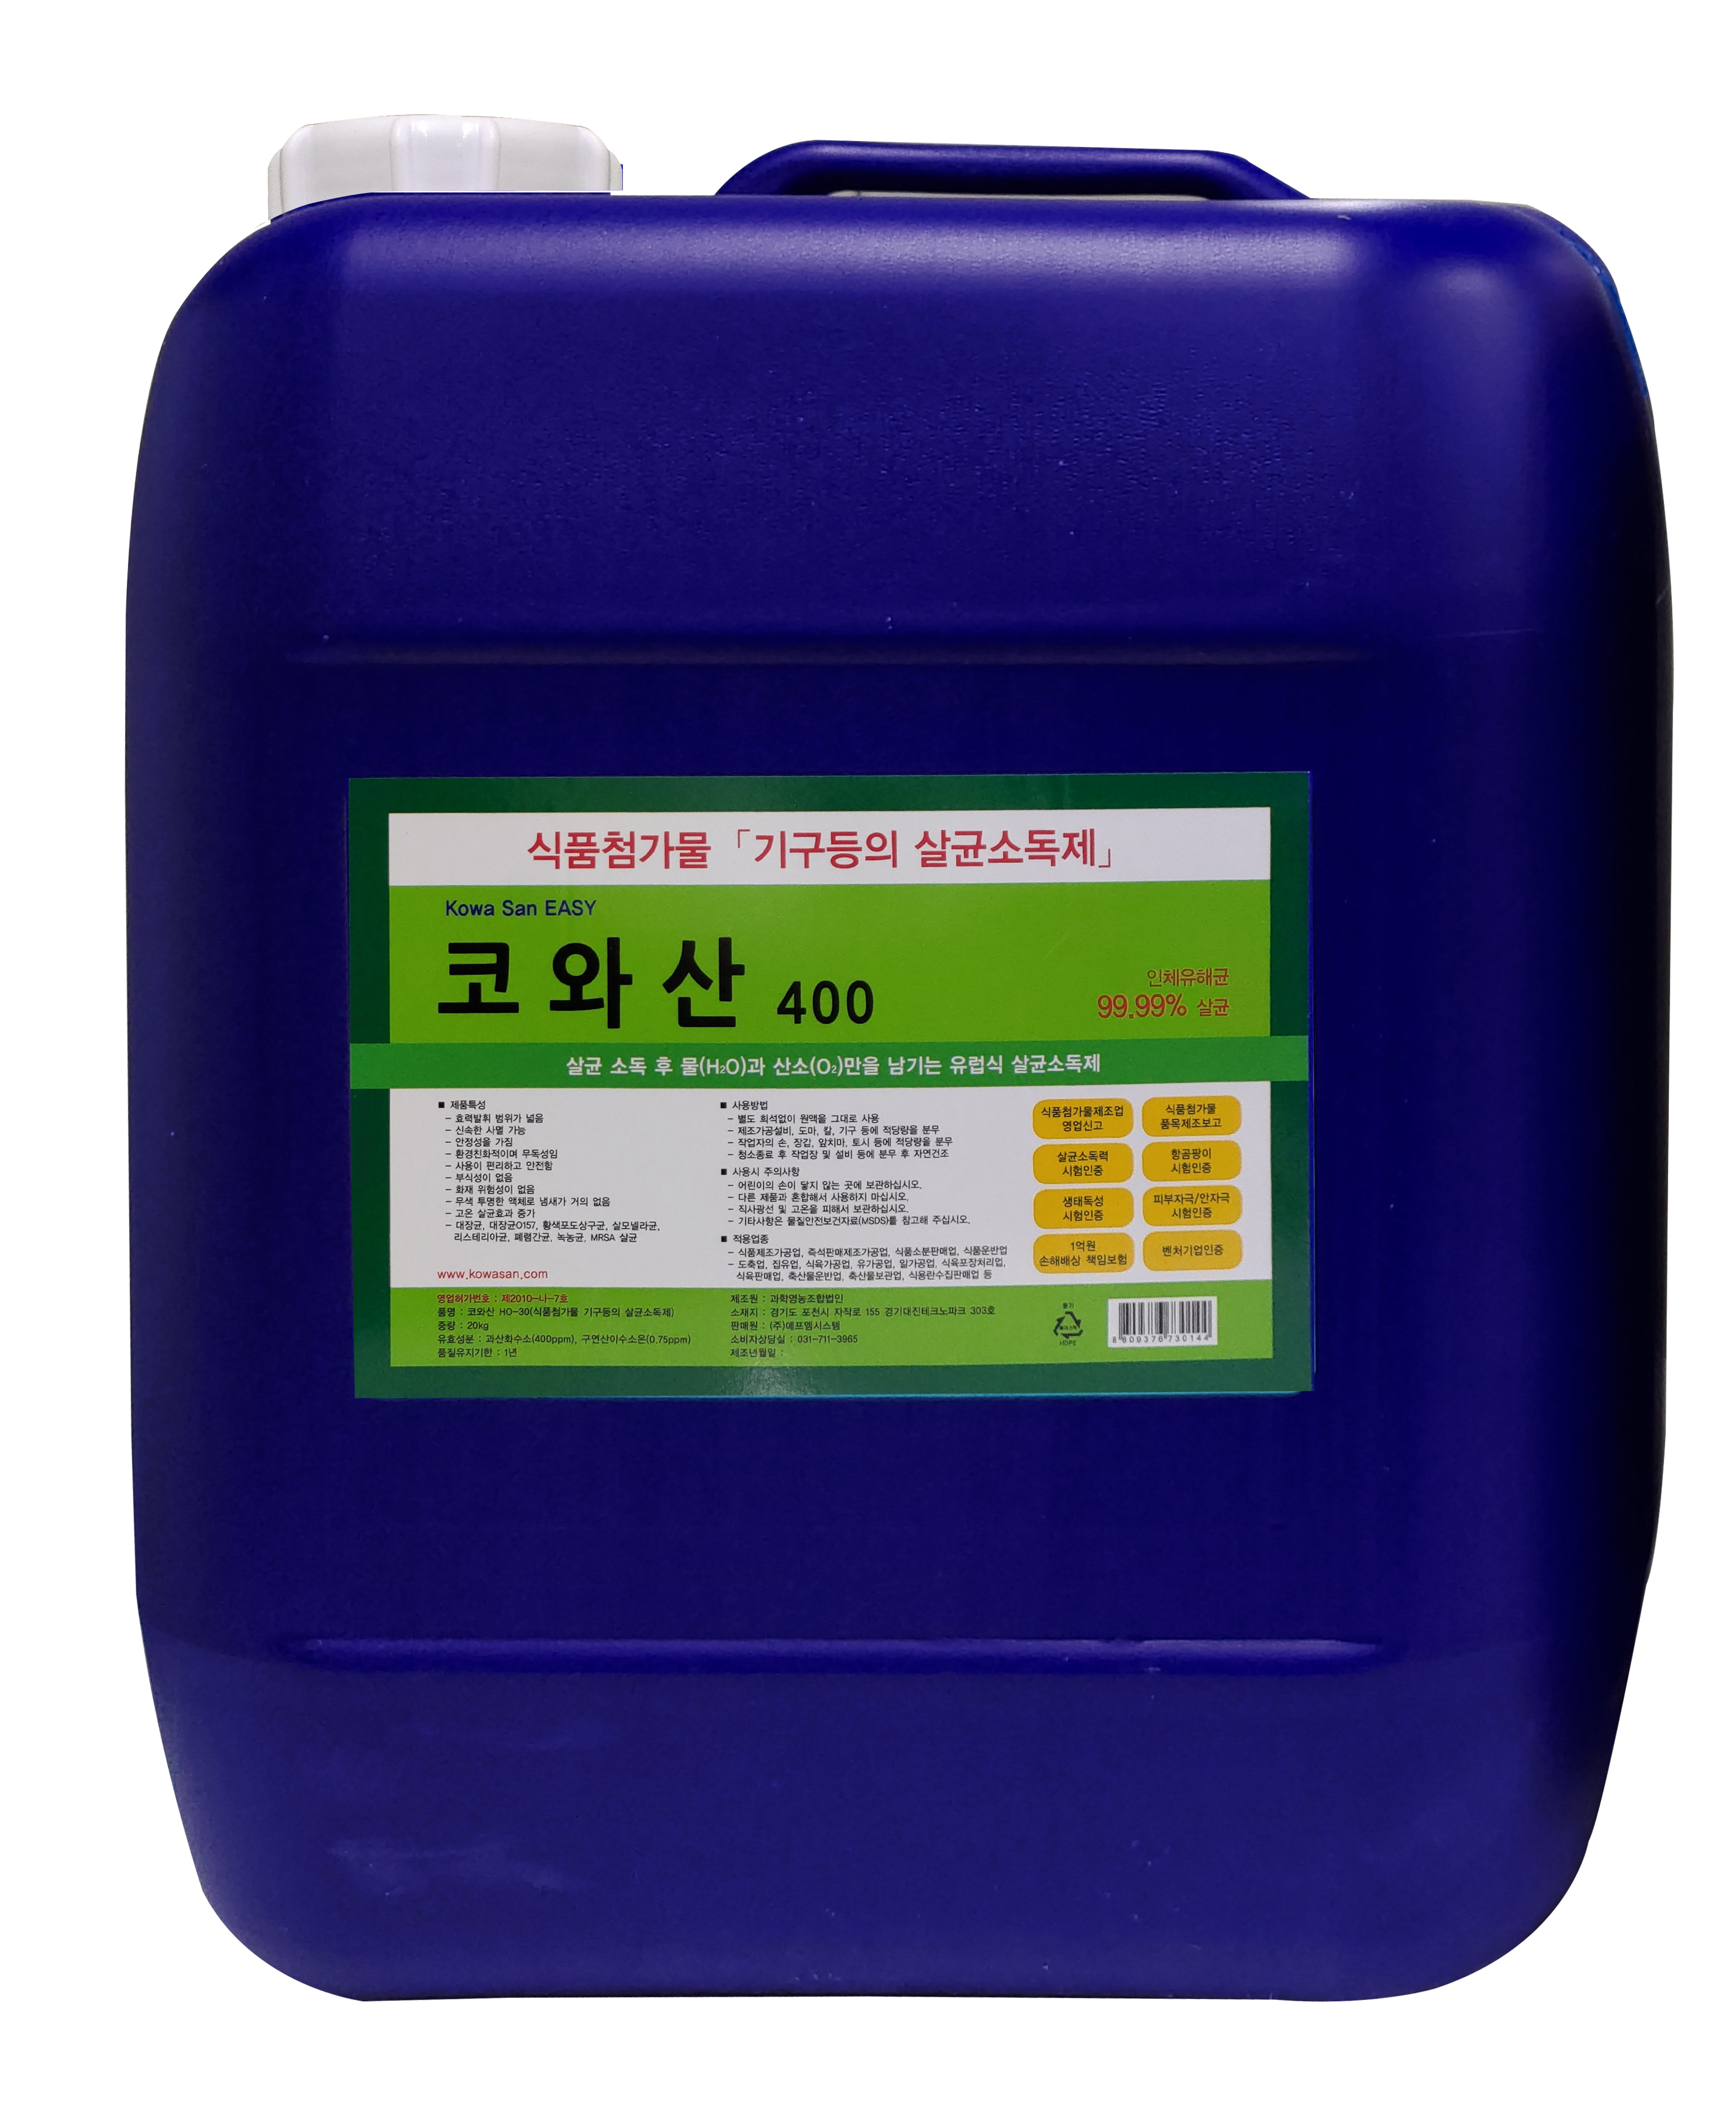 소독제-코와산-코와산400 (20kg)-코와산400 (20kg)